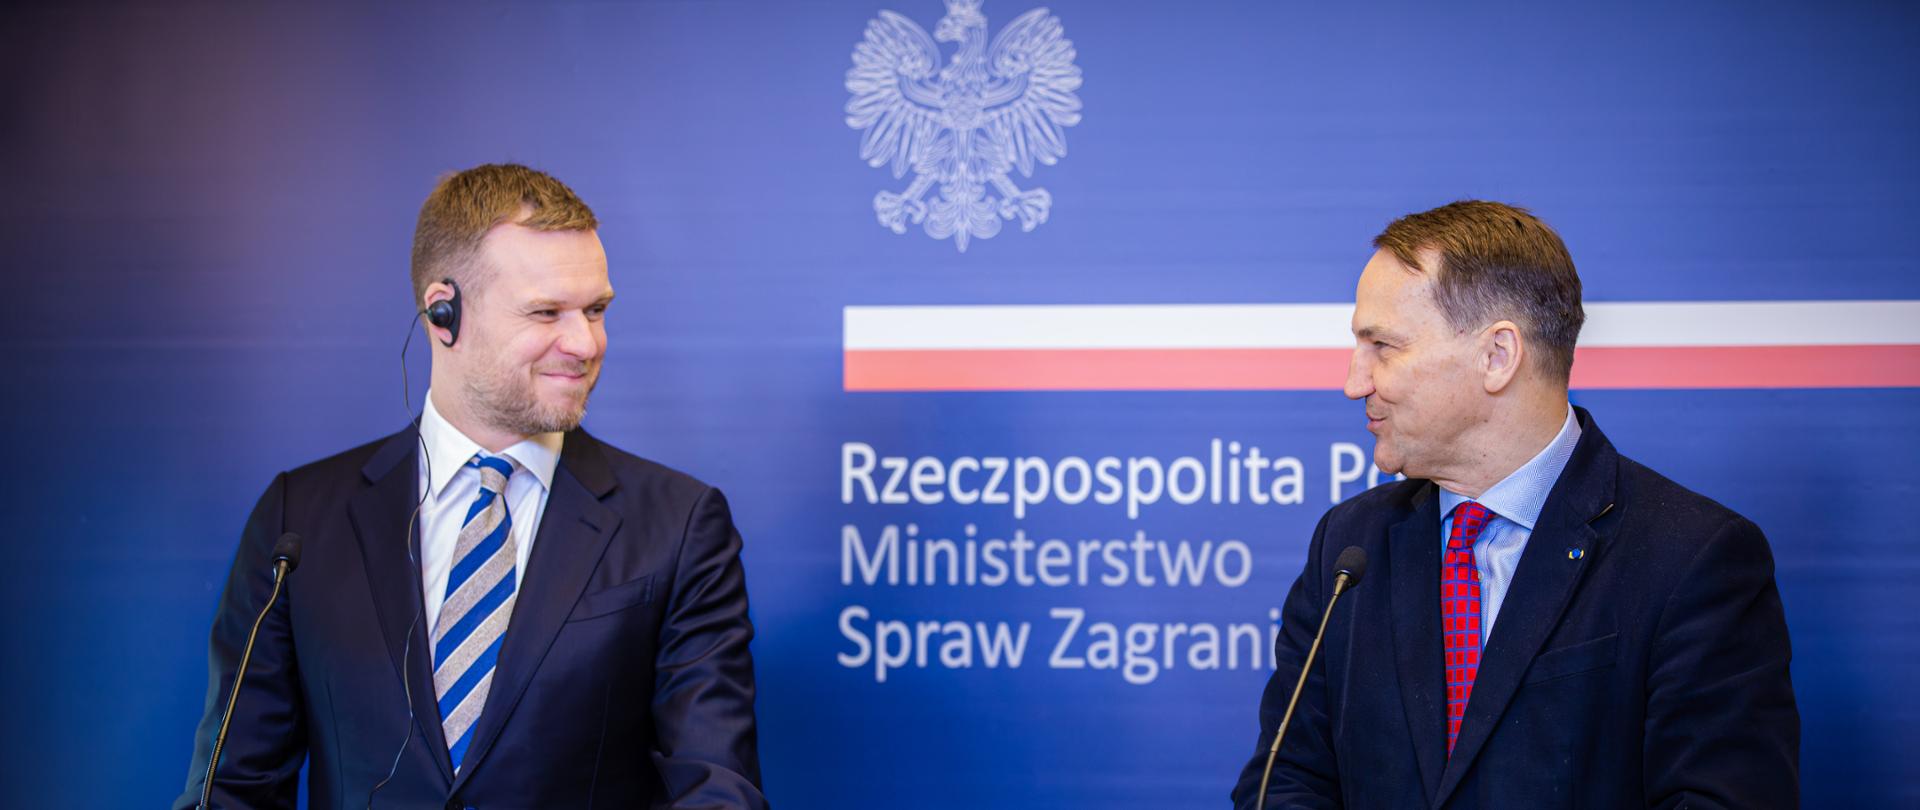 Spotkanie ministrów spraw zagranicznych Polski i Litwy